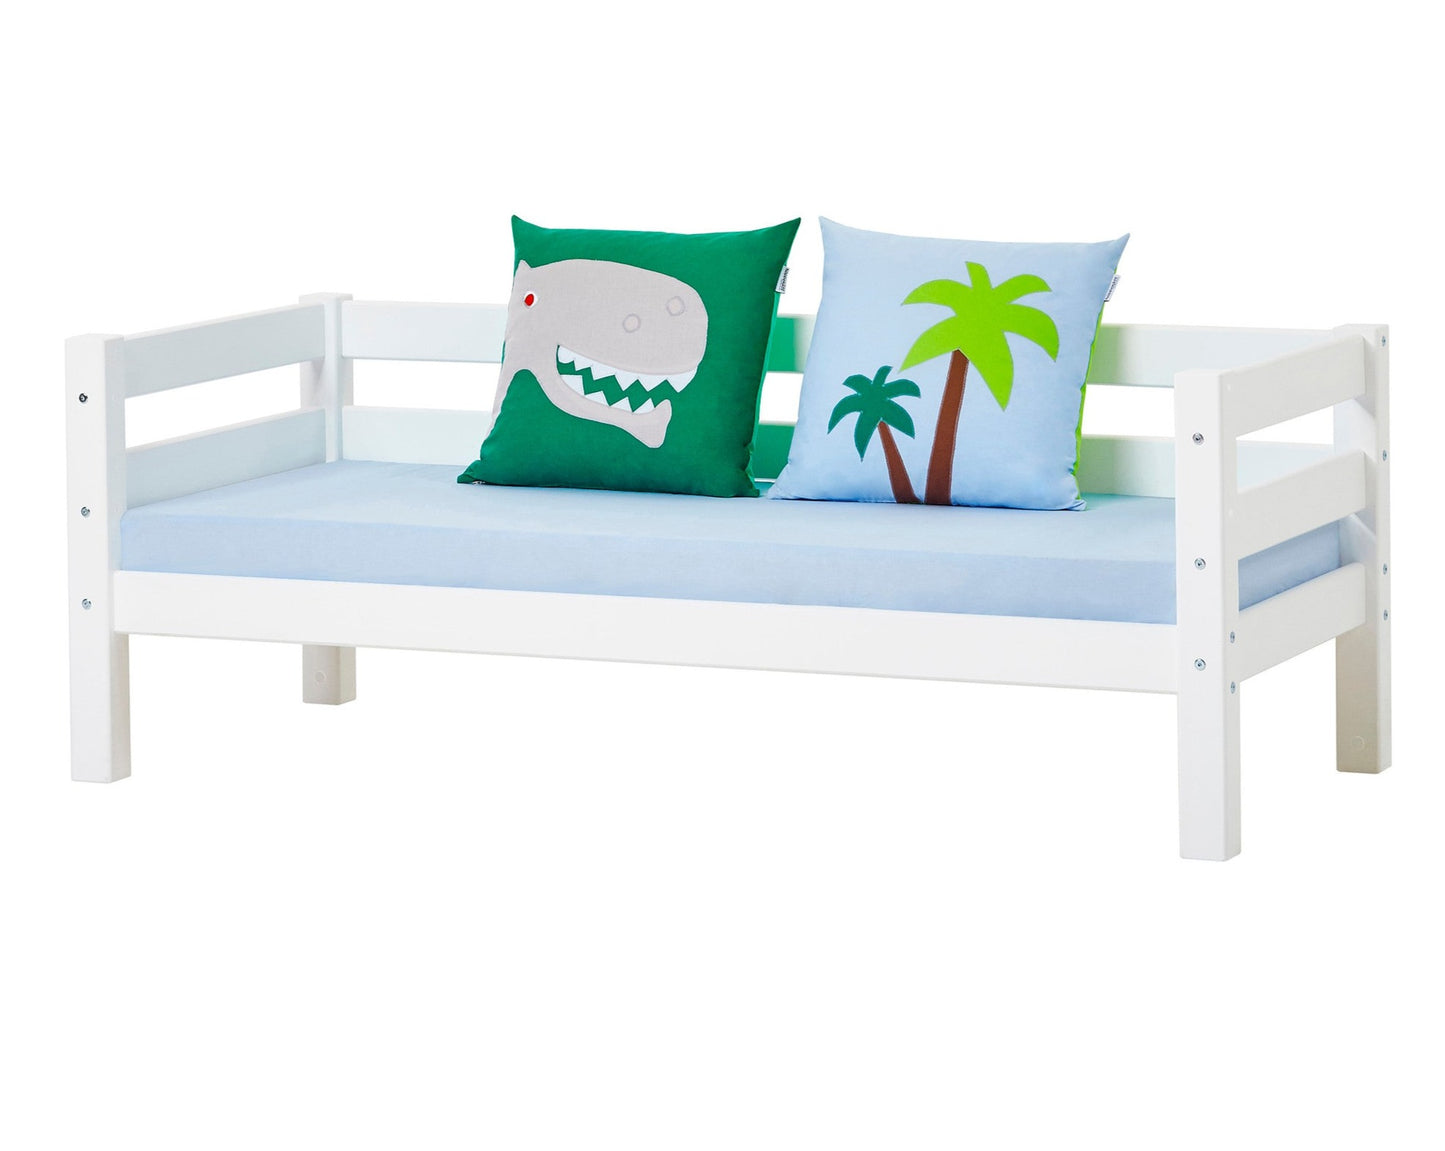 Dinosaur - Cushion set - 2 pillows - 50x50 cm